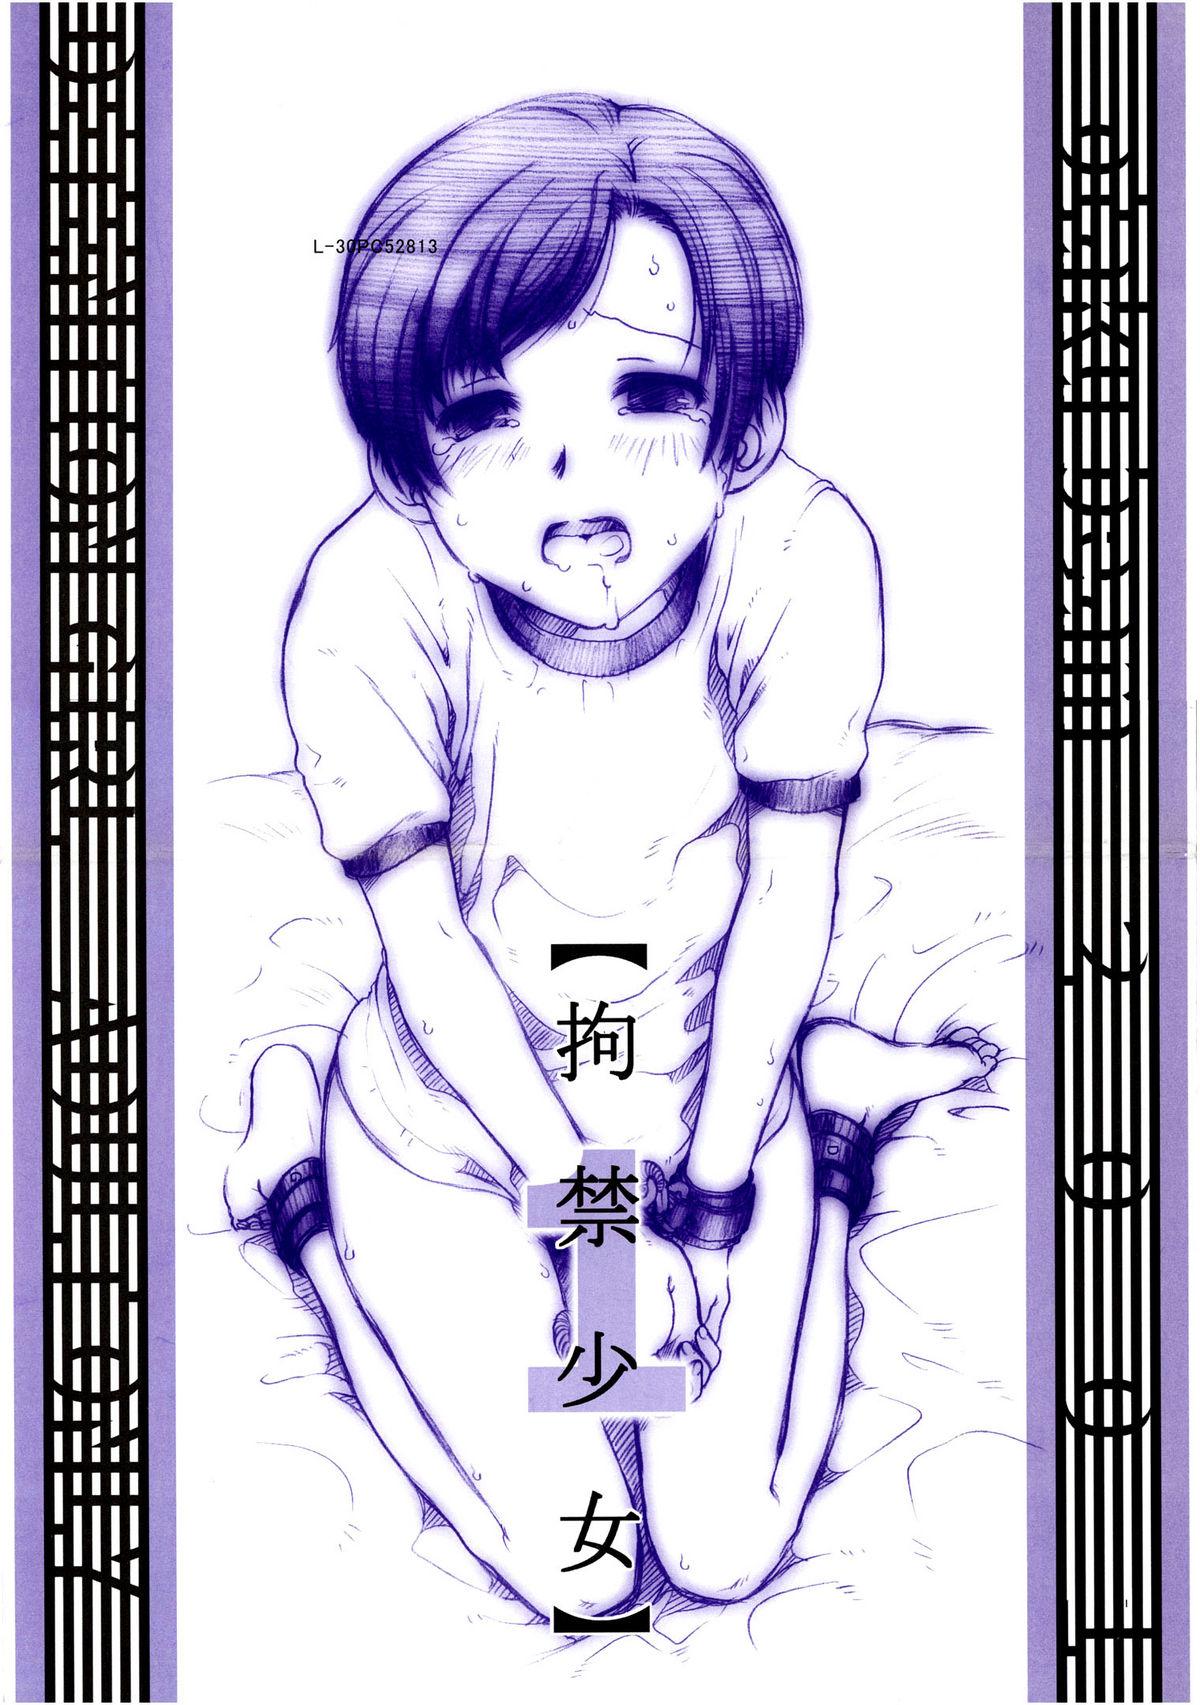 Deepthroat Koukin Shoujo 1 - Detention Girl 1 Lingerie - Picture 1